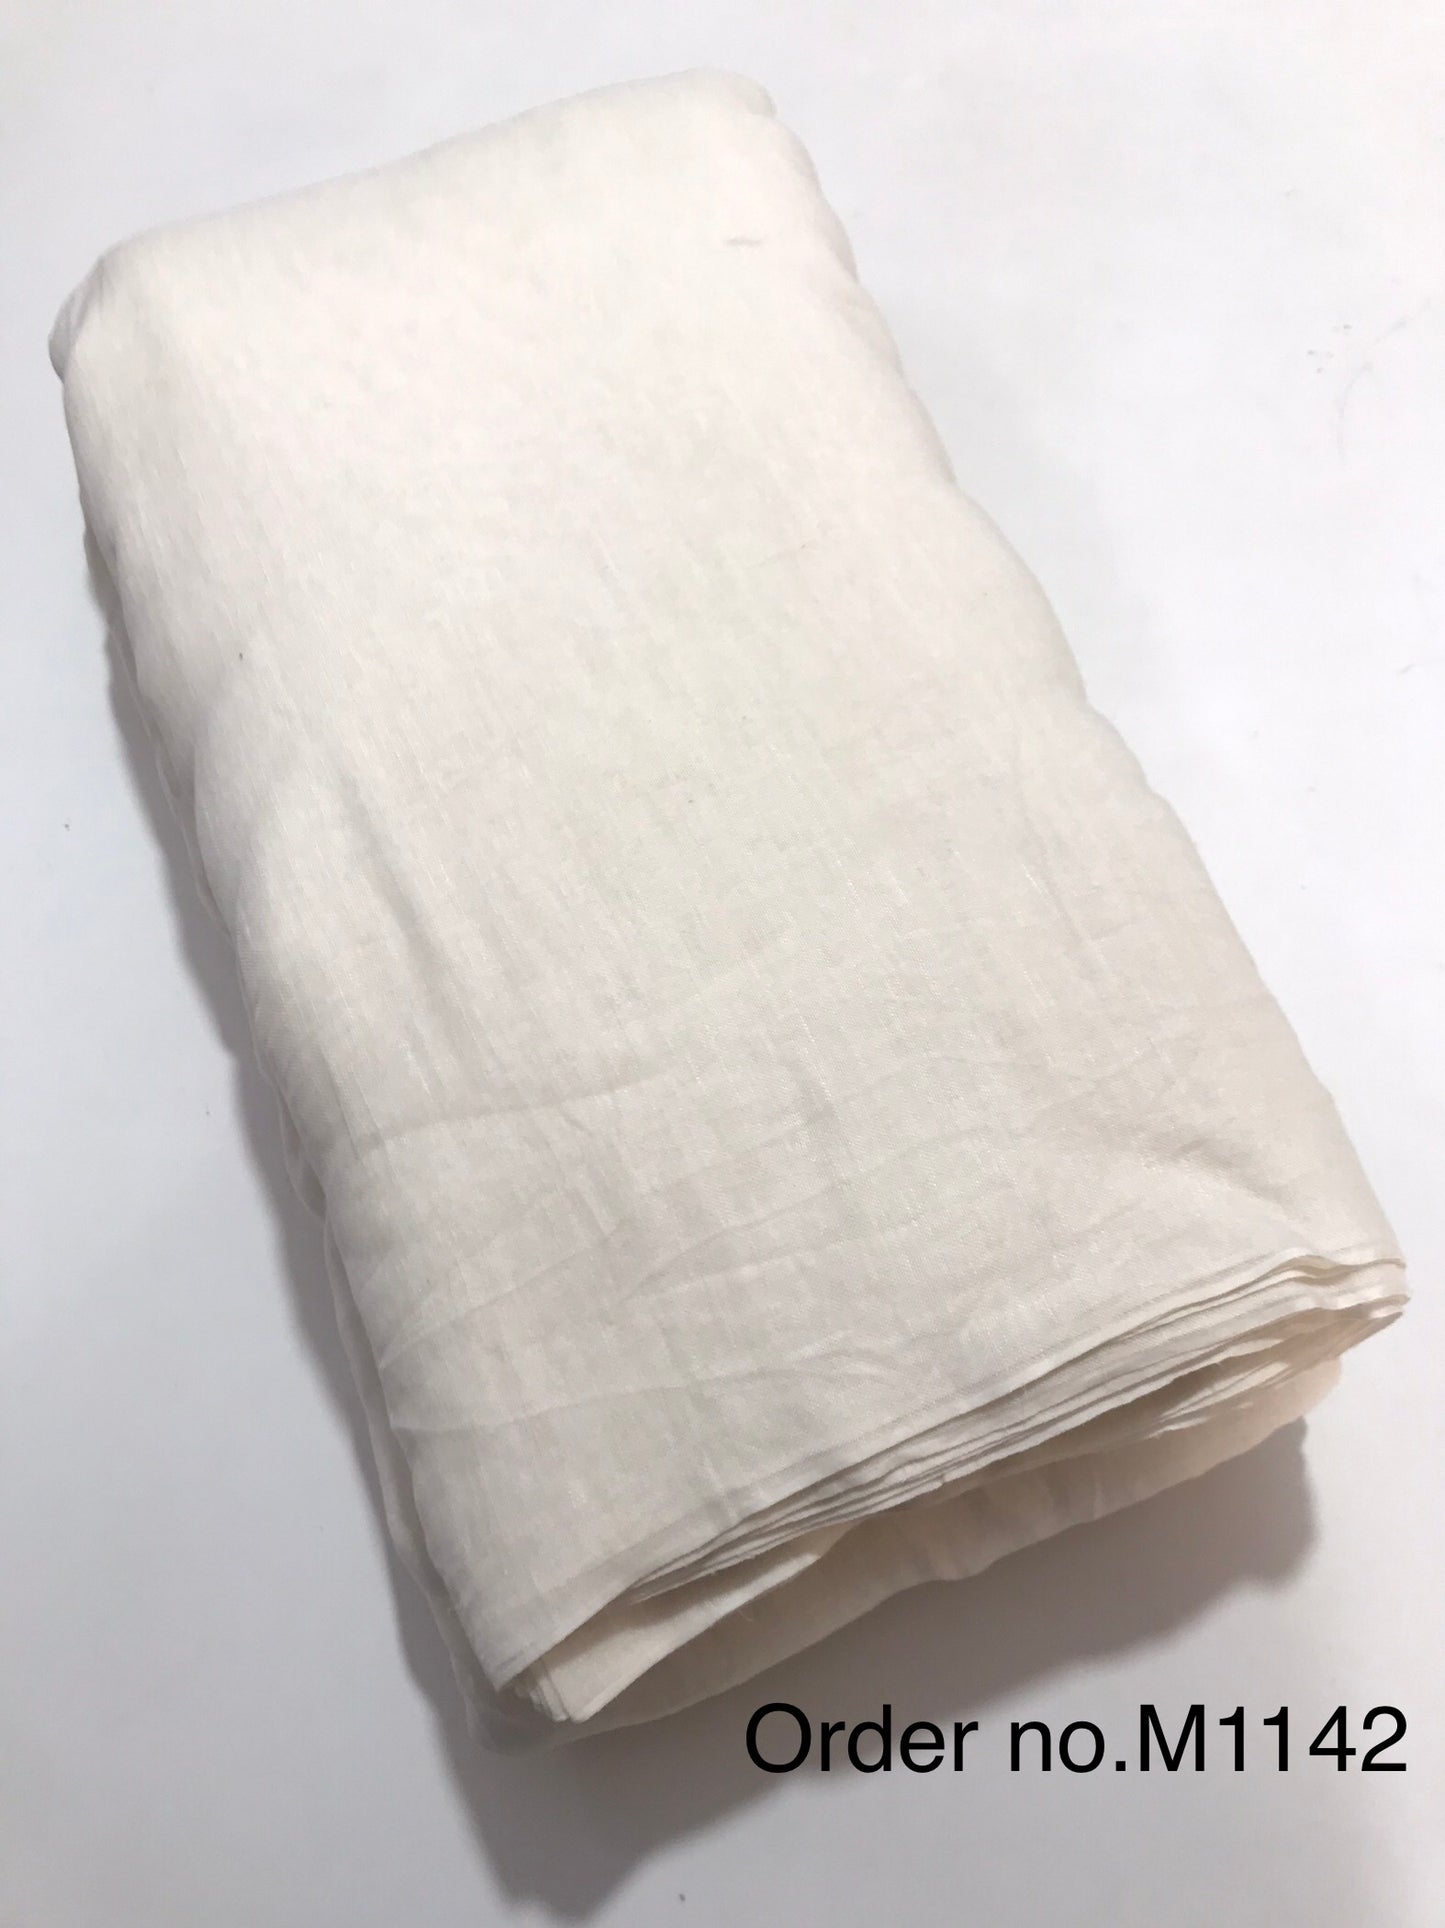 Linen gauz cotton 80gm width 60”